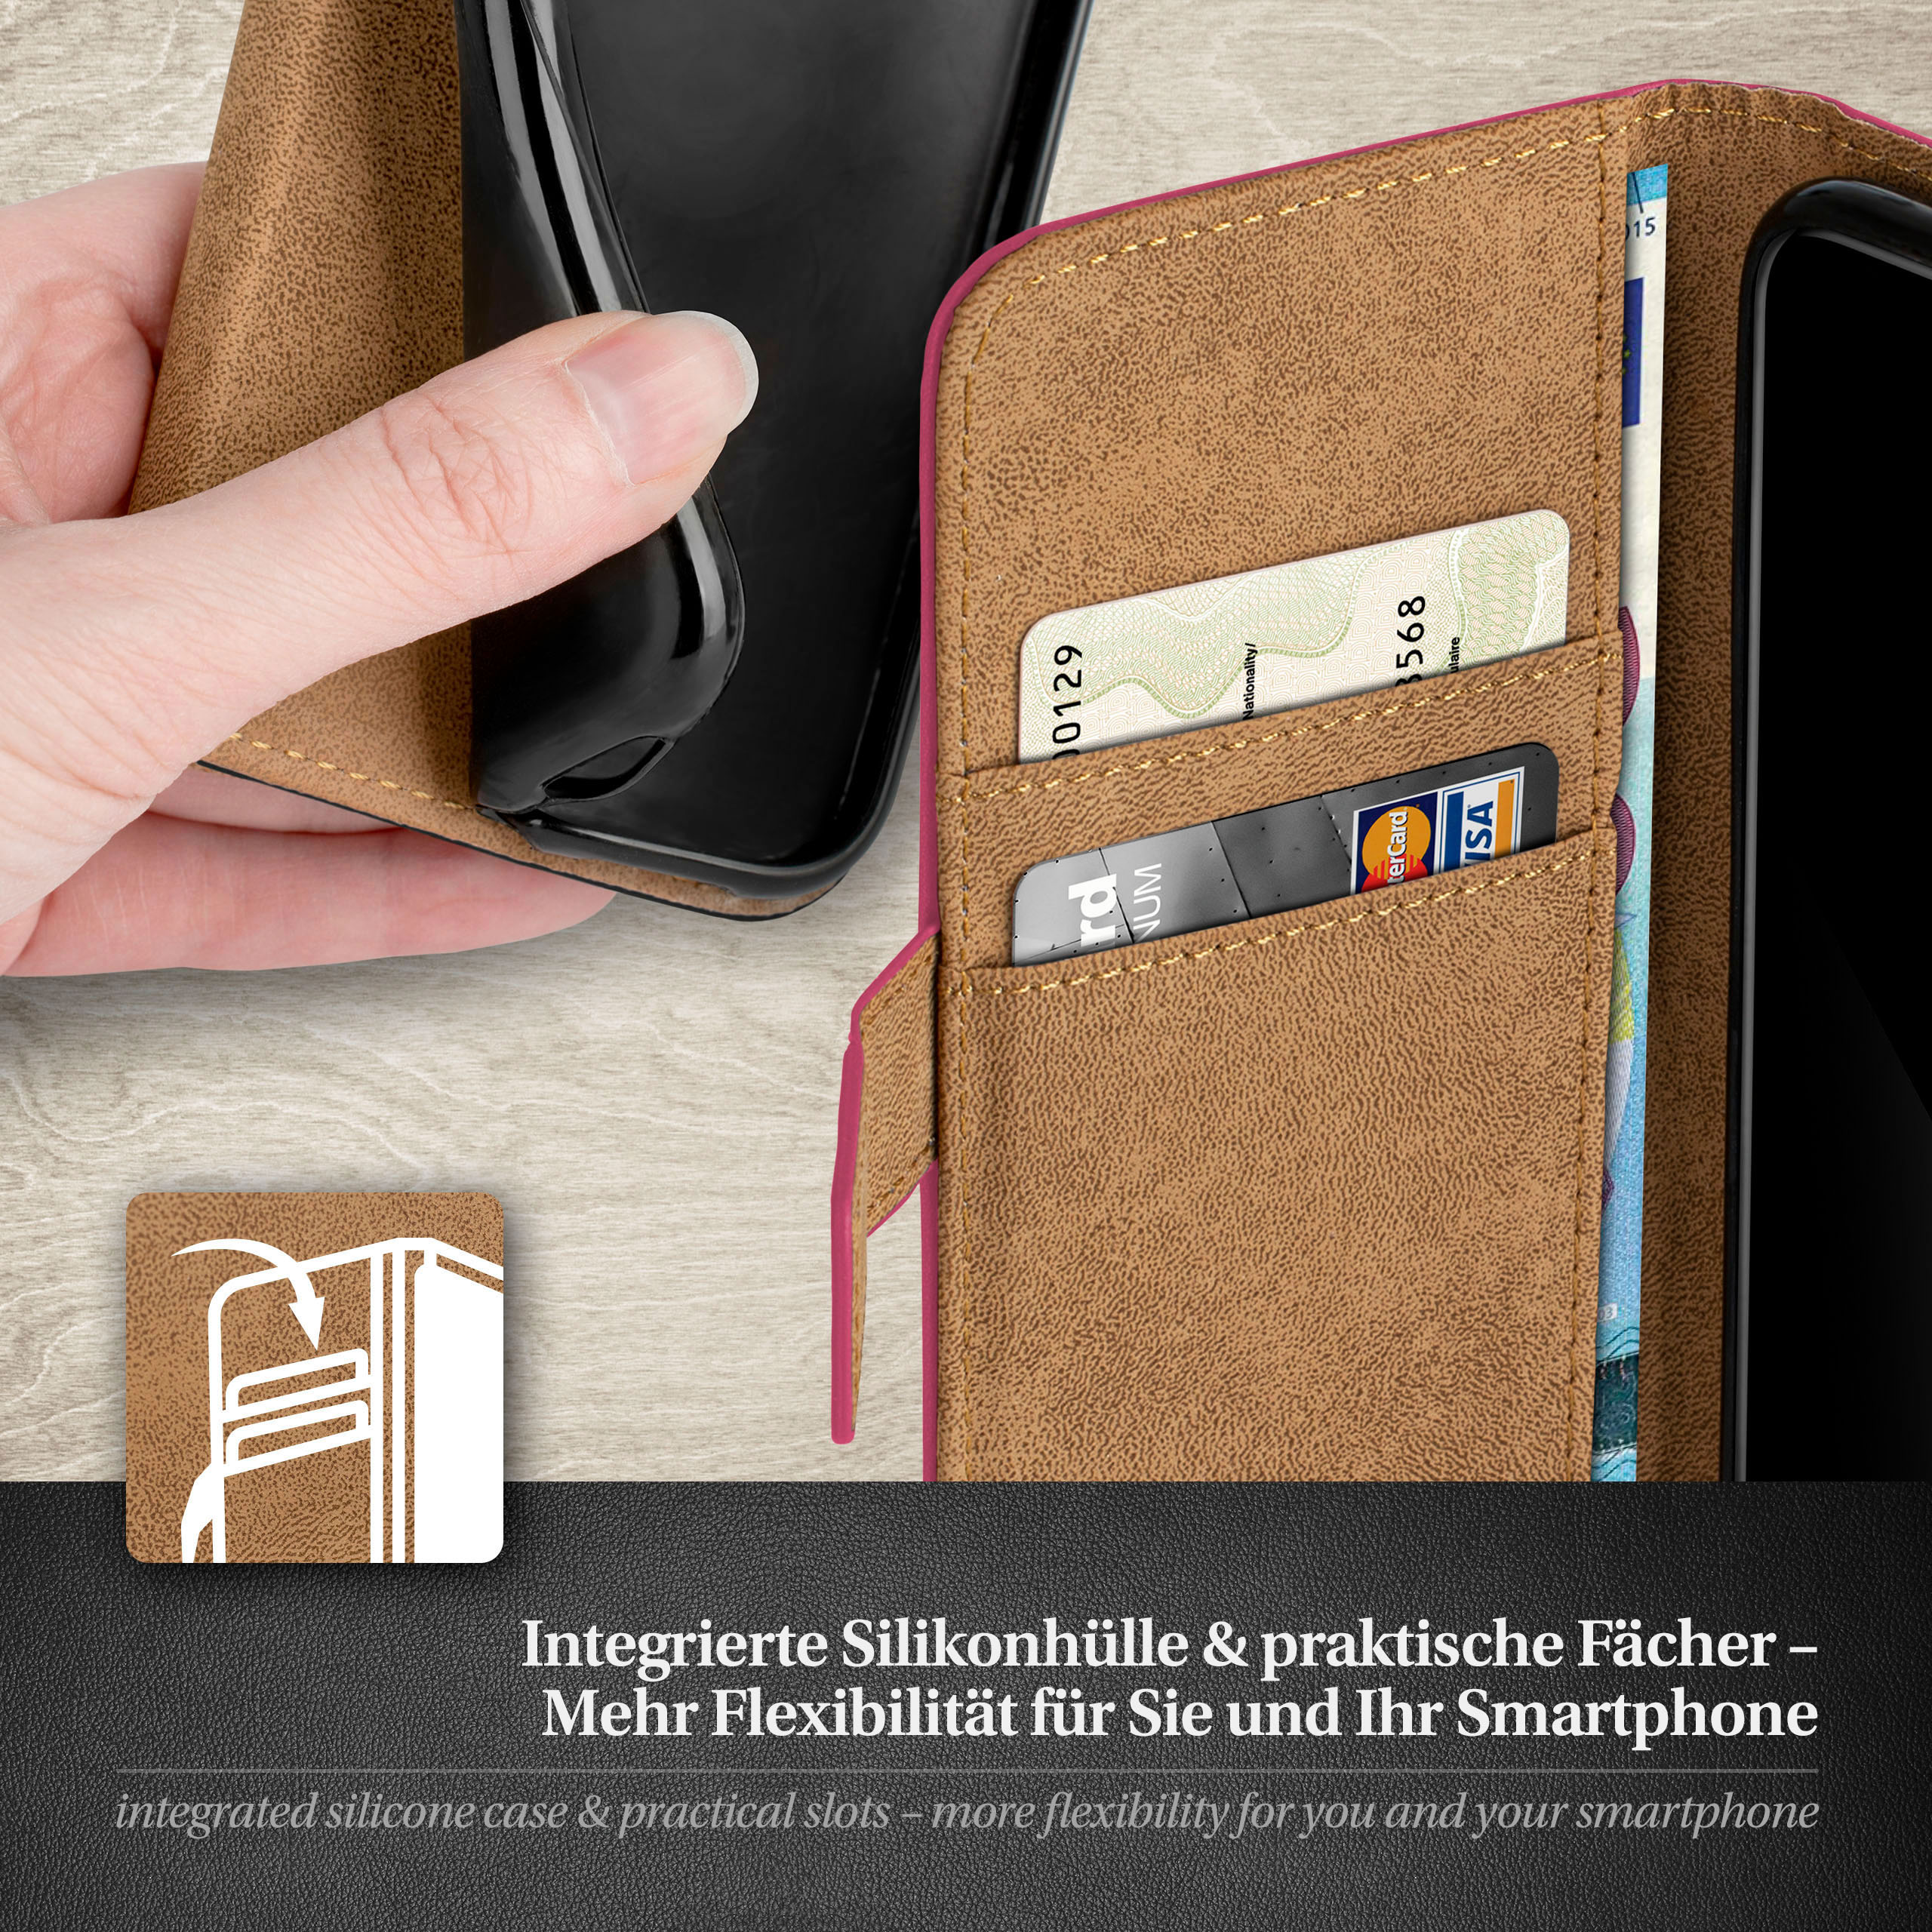 Samsung, S3 Case, Bookcover, Galaxy / S3 MOEX Book Berry-Fuchsia Neo,